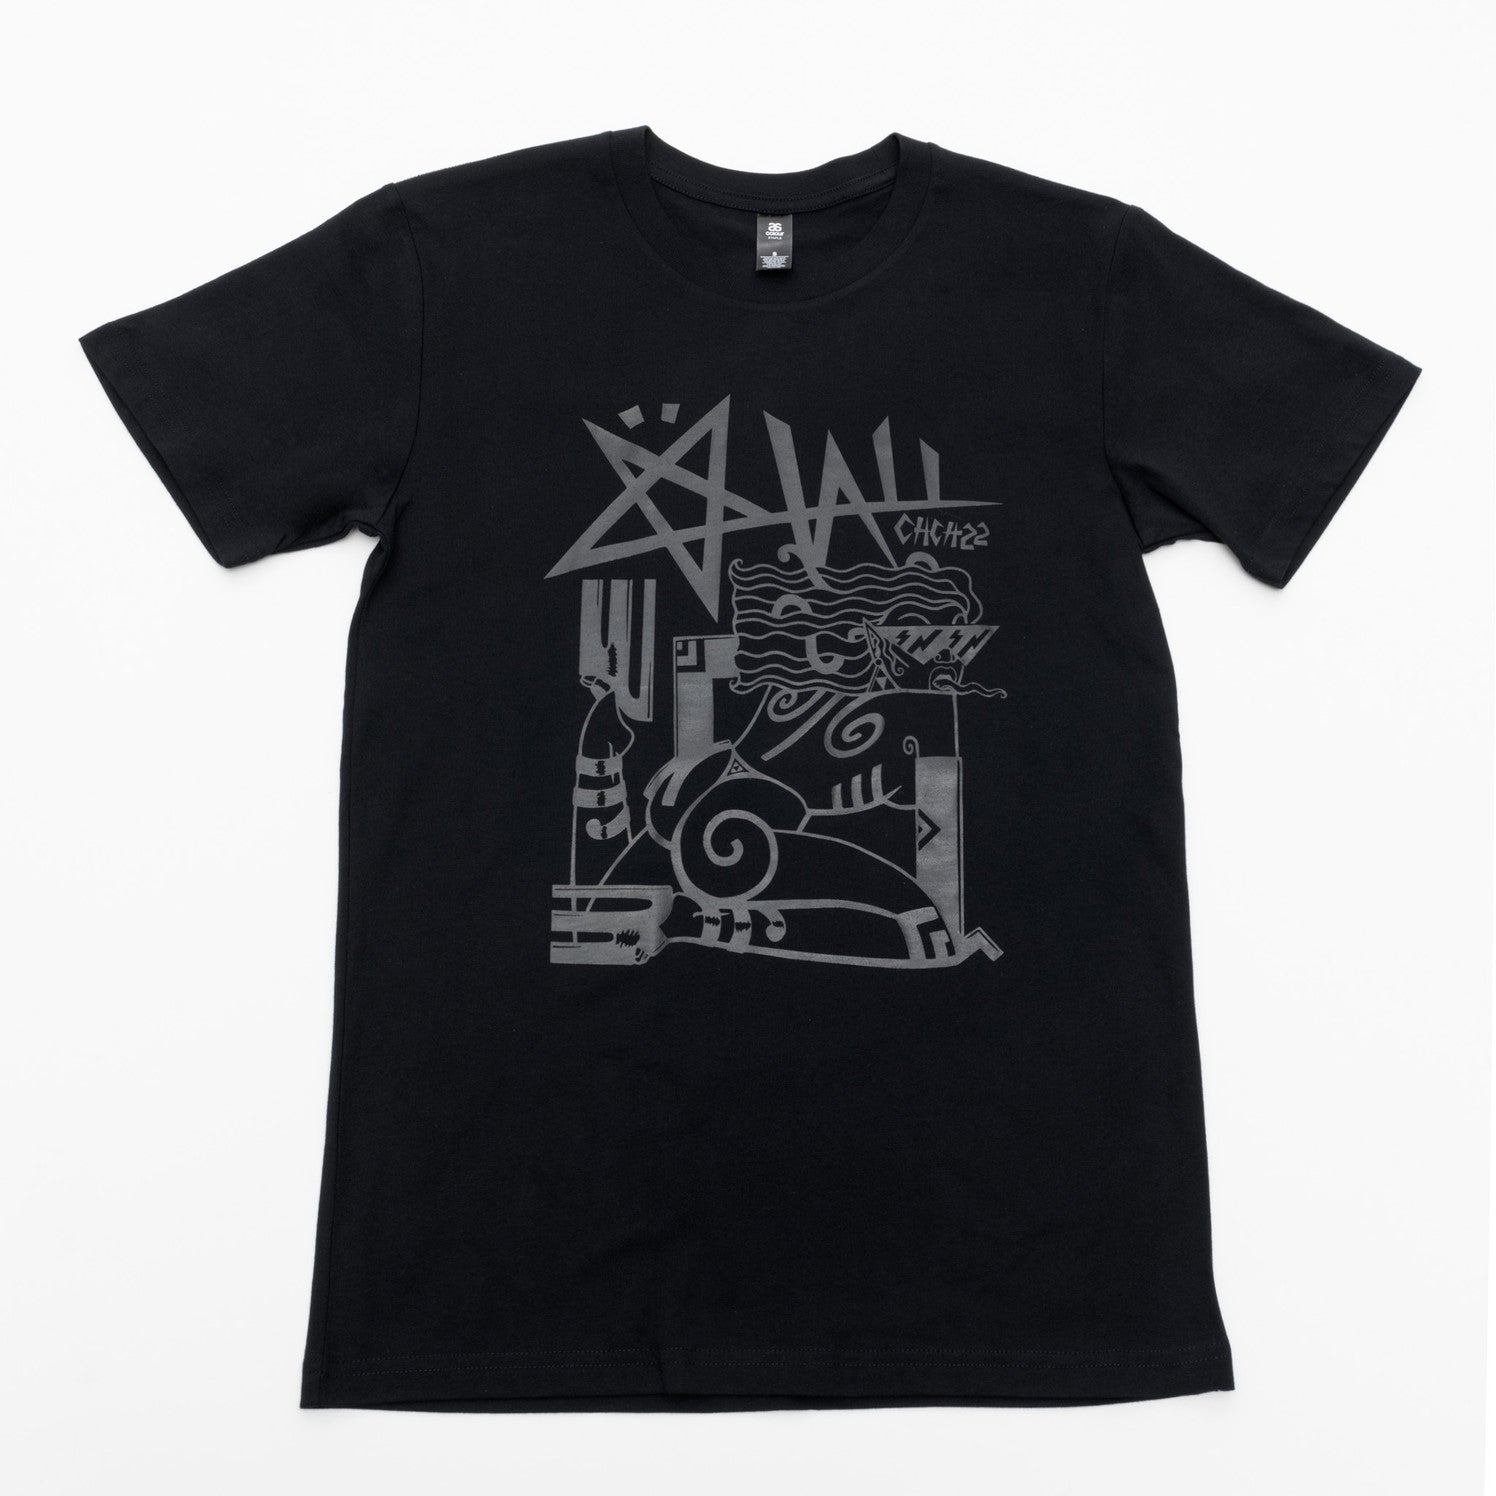 Xoë Hall CHCH22 T-shirt